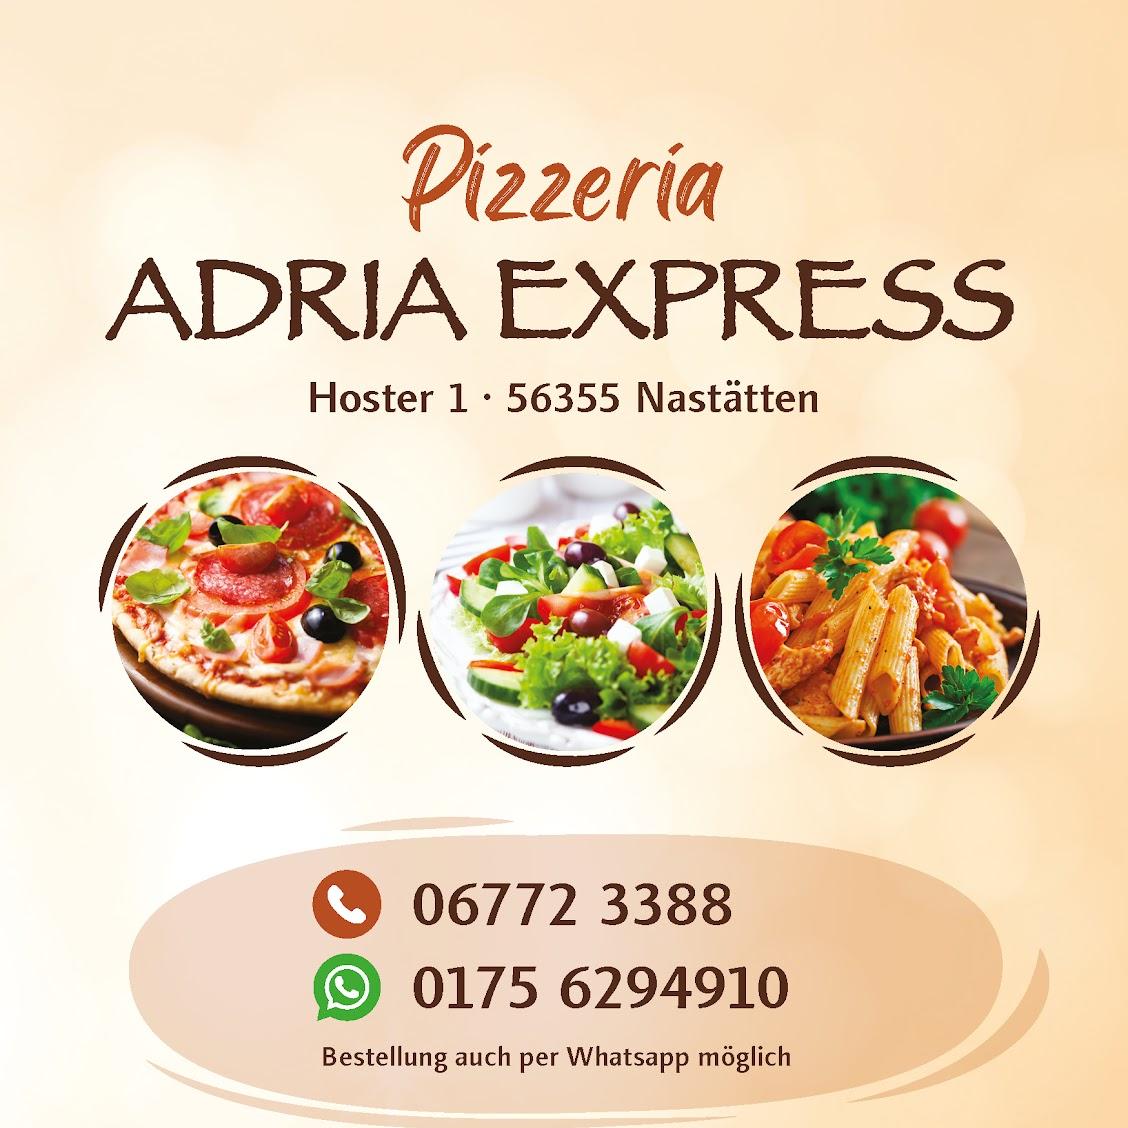 Restaurant "Pizzeria Adria Express" in Nastätten